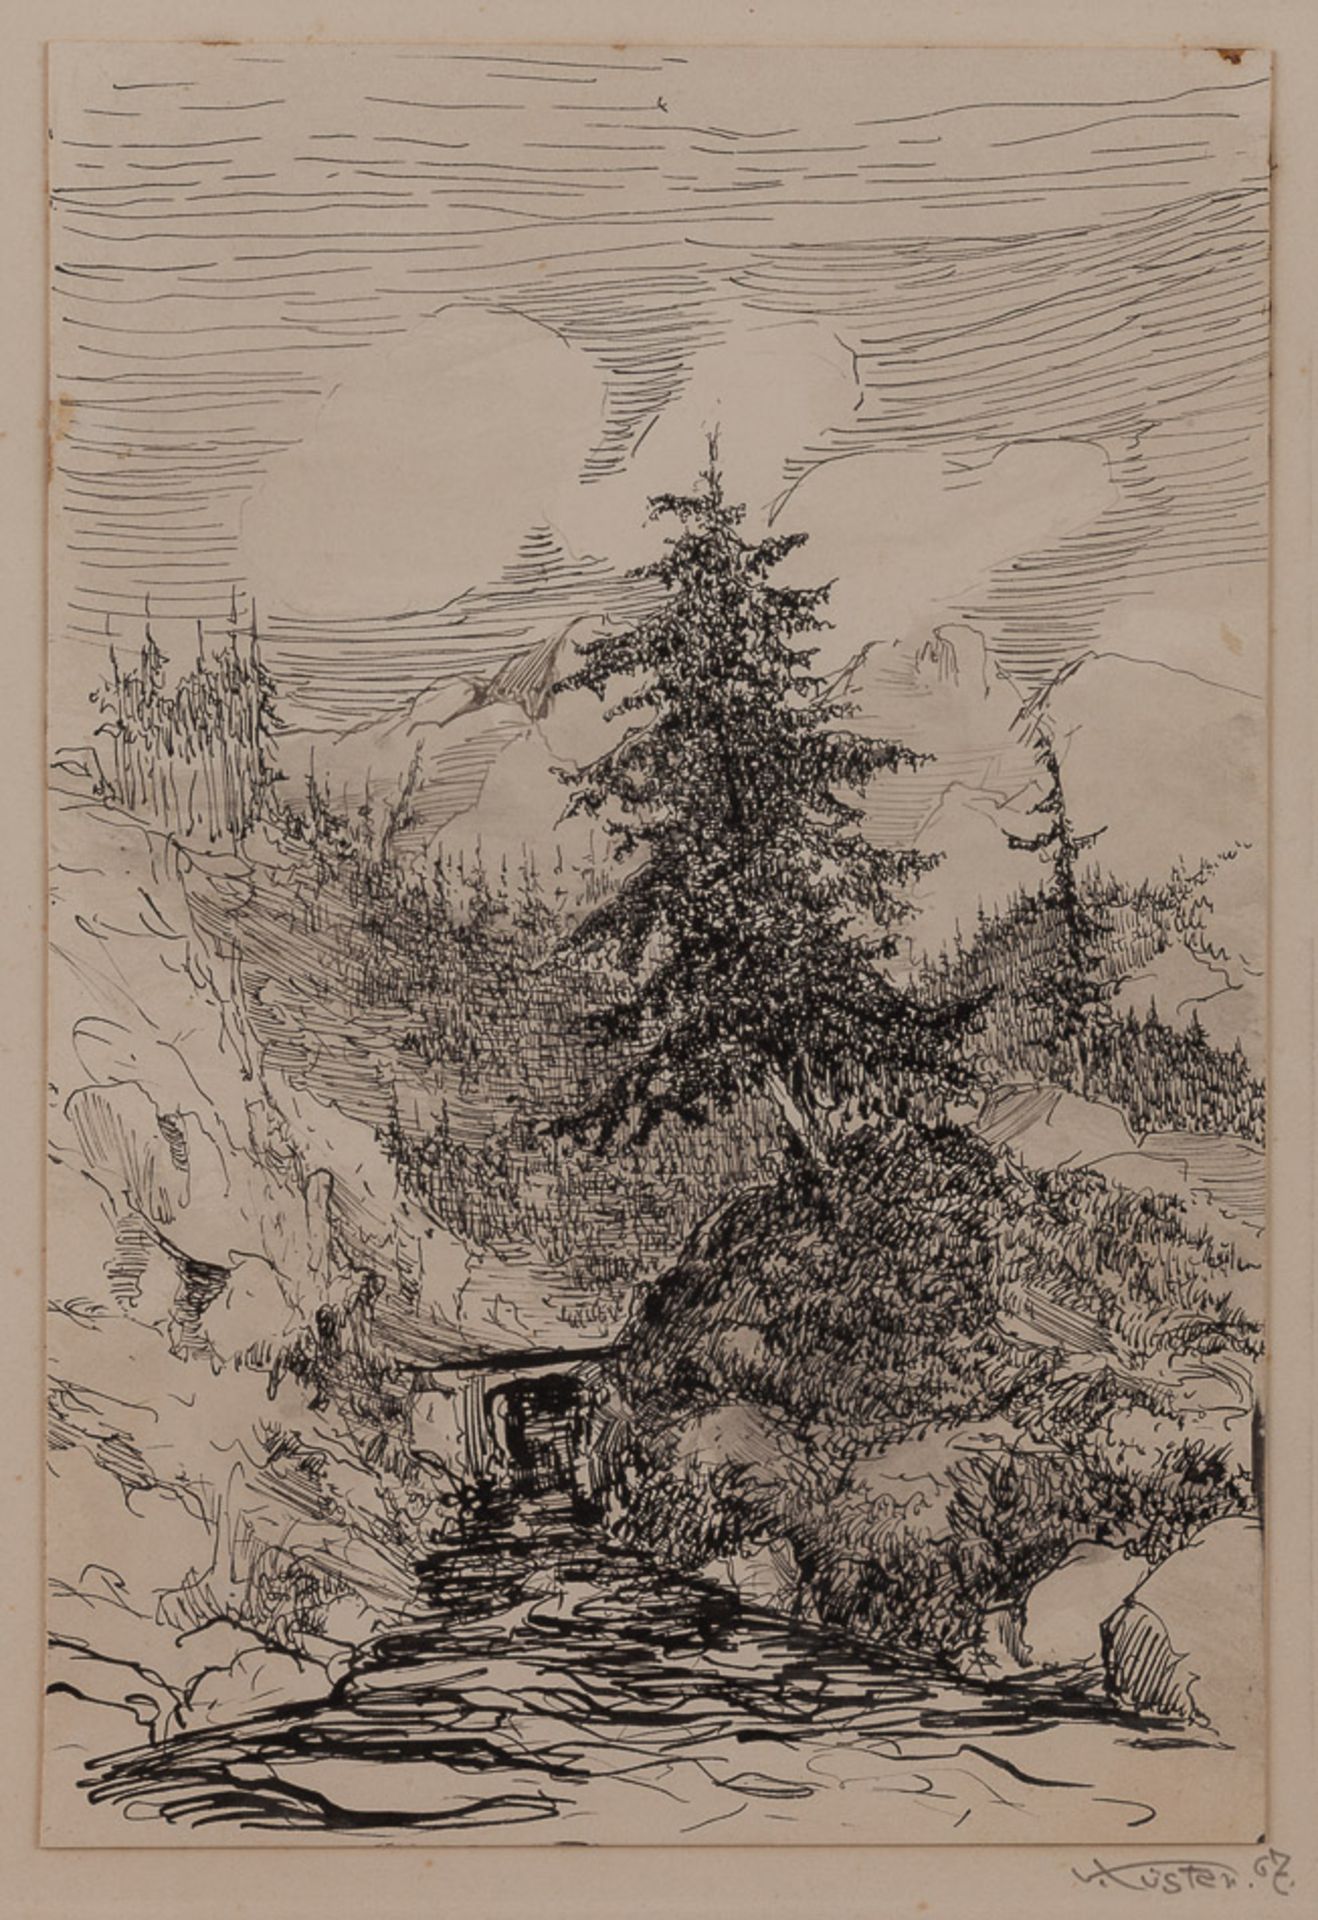 Baron von Küster 19./20. Jhd."Vilshofen"
Zeichnung, Tinte - Feder, 21,5 cm x 14,5 cm,
rechts unten